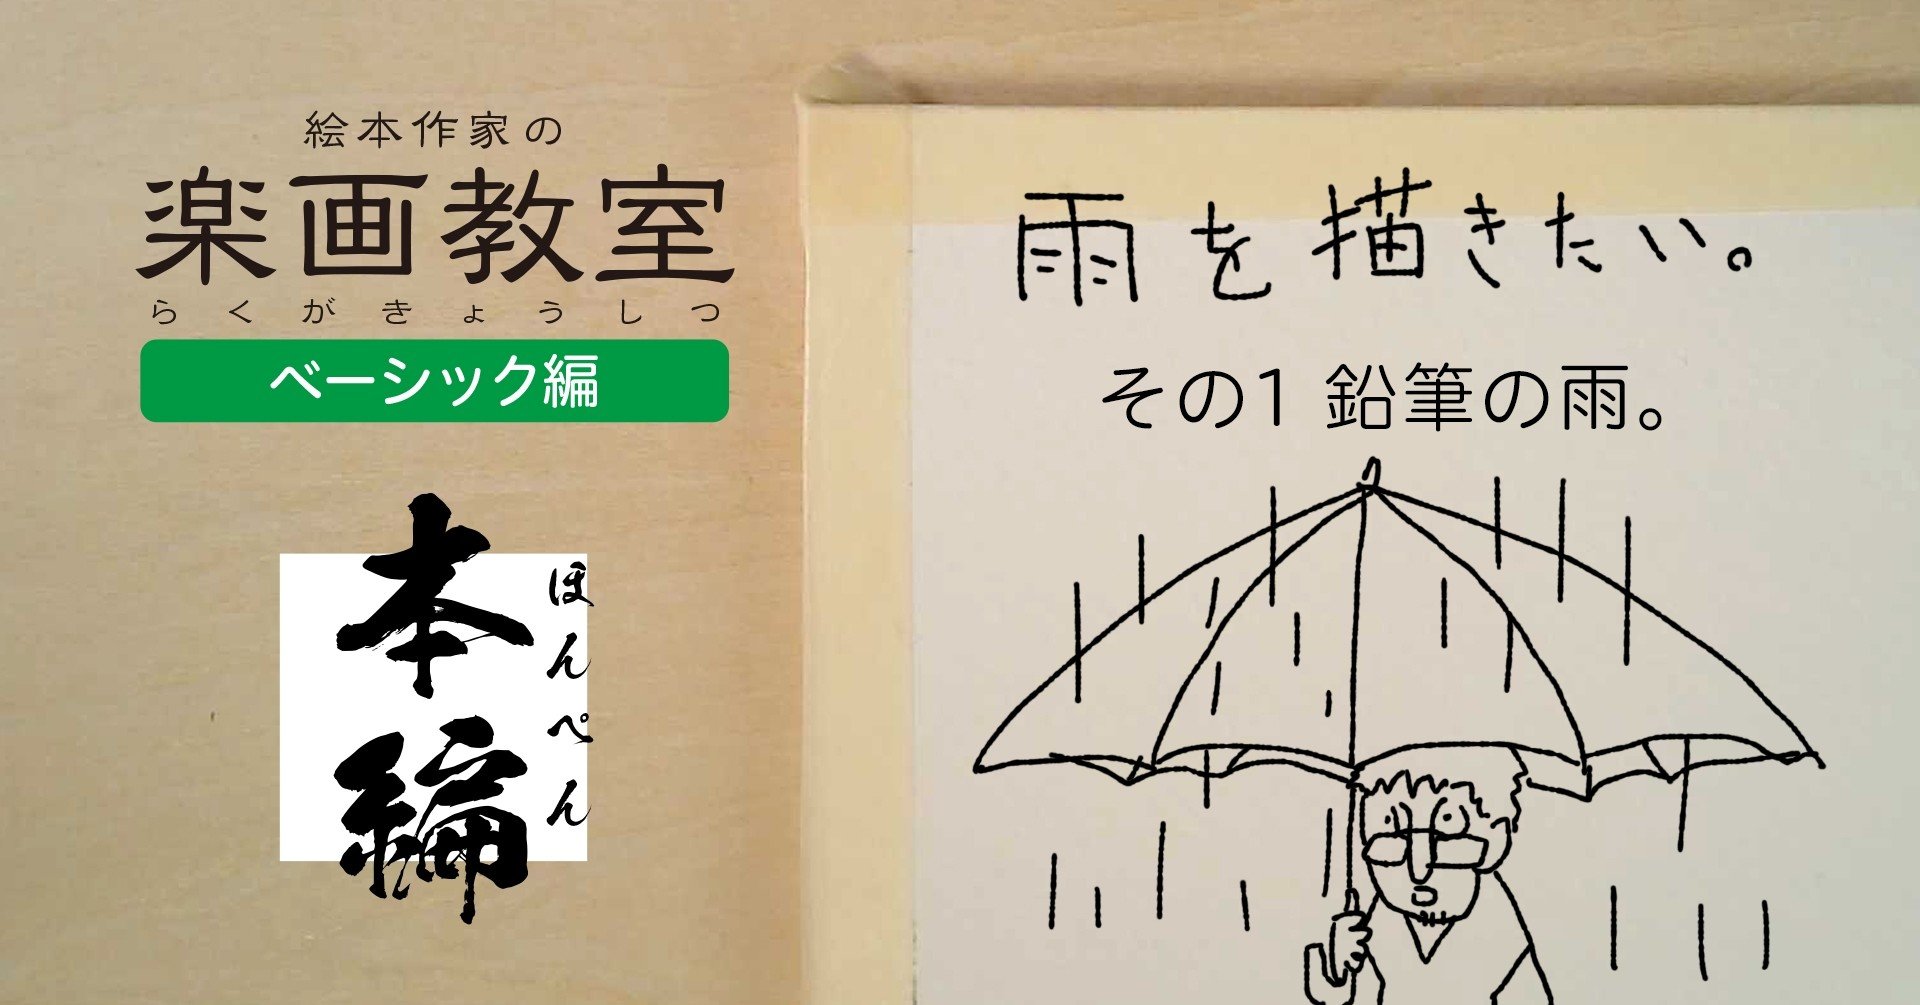 雨を描きたい 鉛筆の雨 5つの道具と魅力的な雨の描き方 その1 全5回 サトウヒロシ 絵本作家 Note